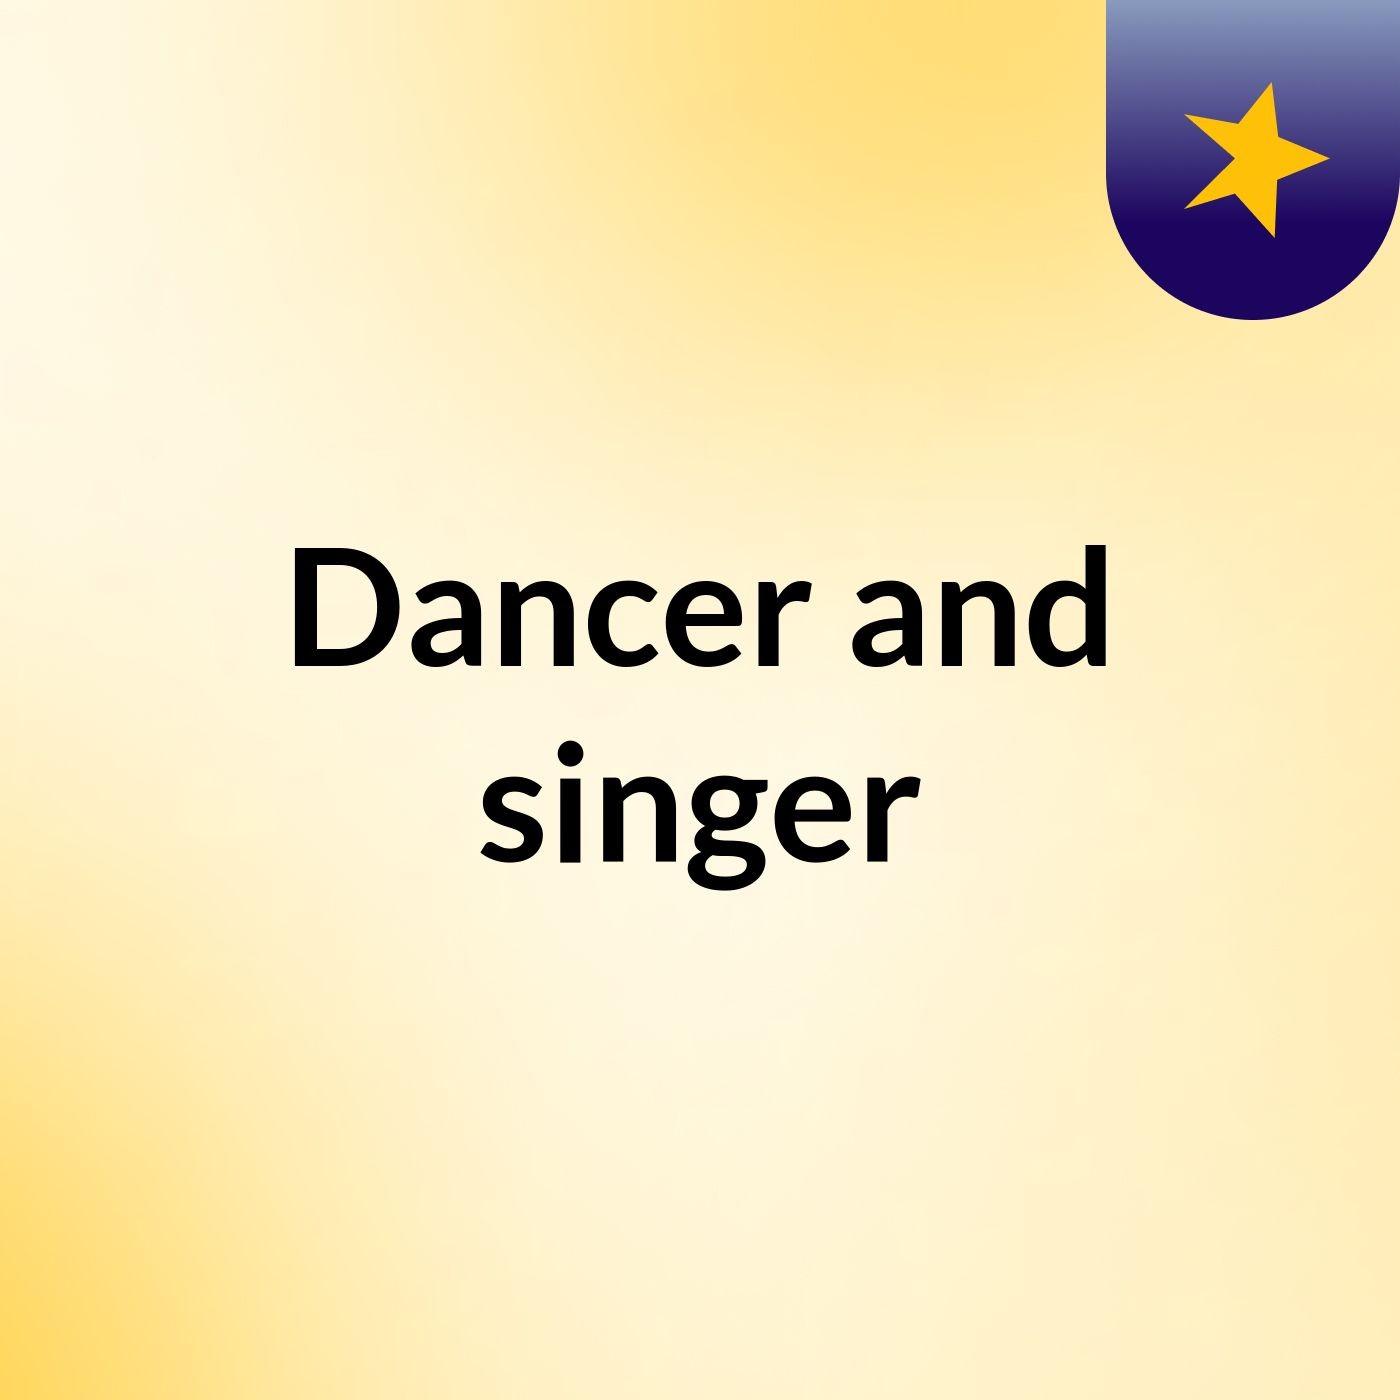 Dancer and singer